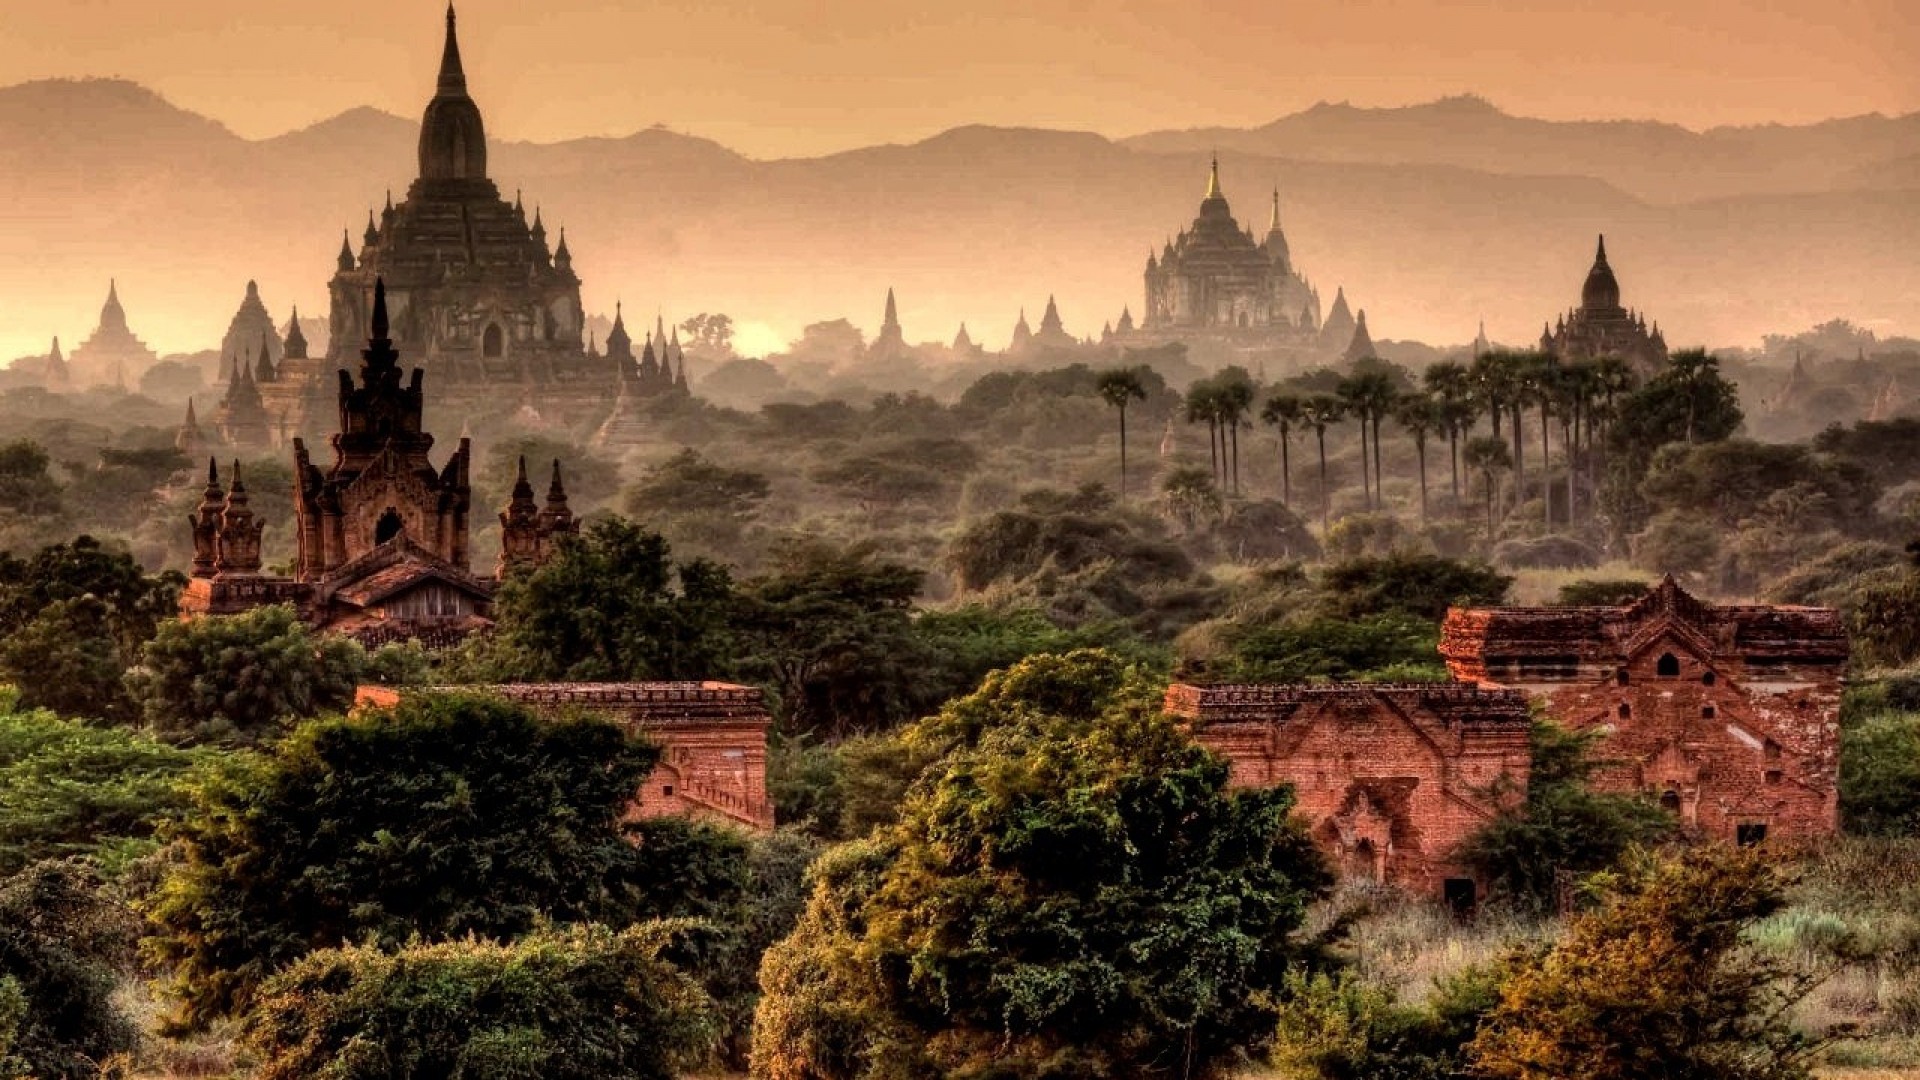 М'янма - пам'ятки, цікаві факти та місця, культура, природа, традиції